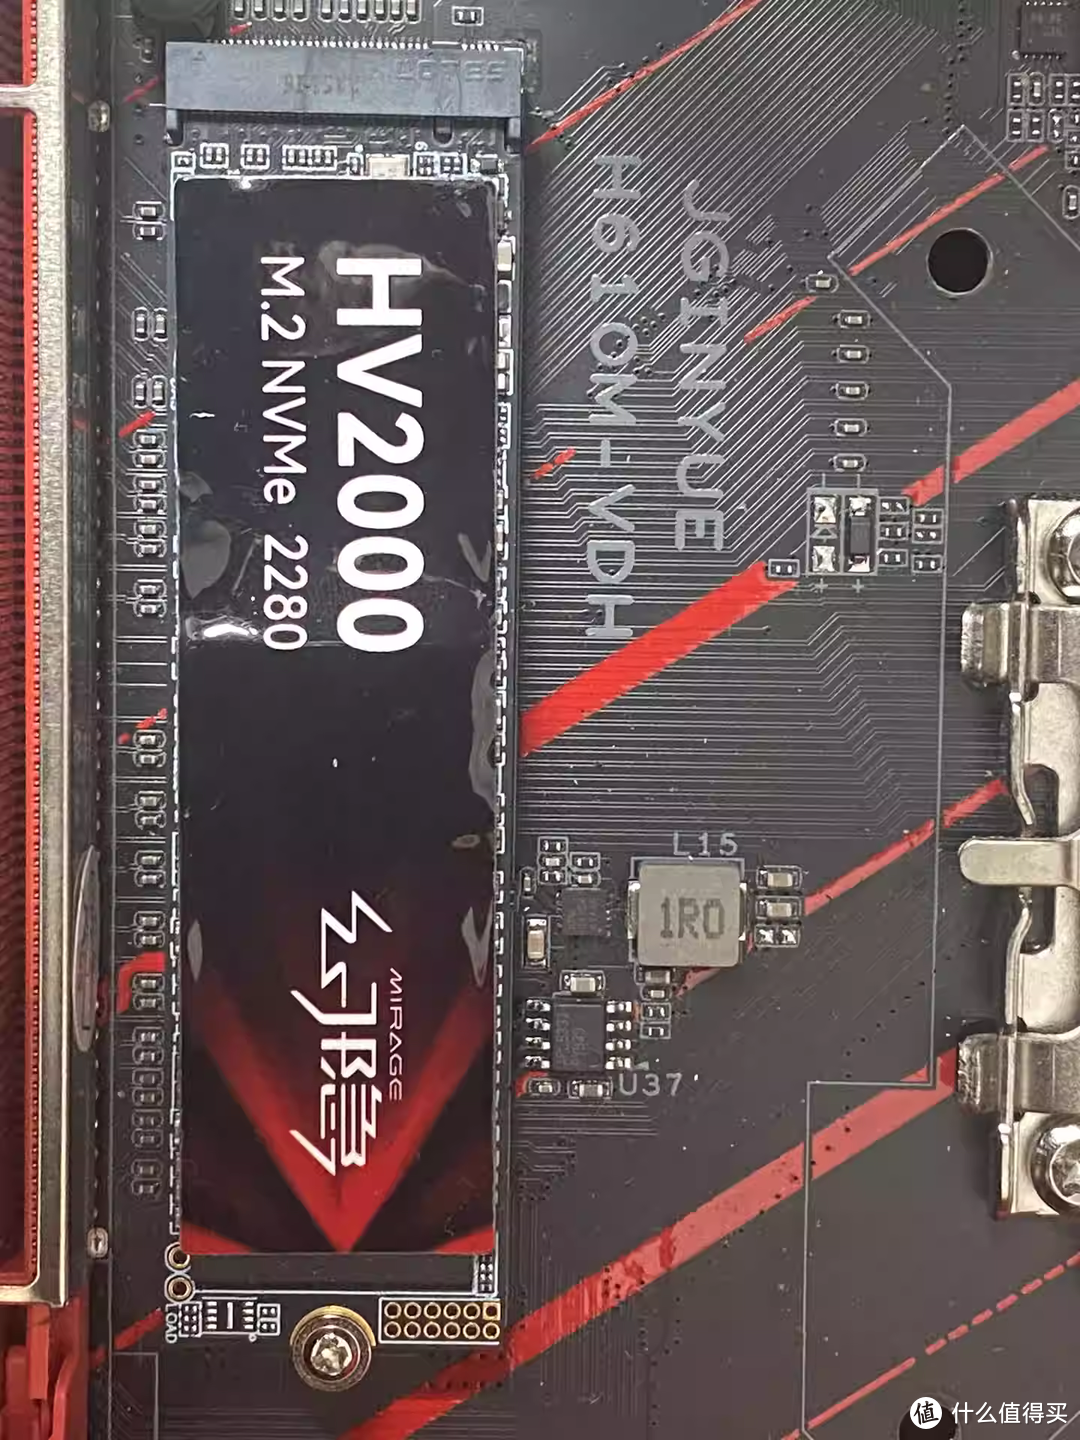 速度狂飙！幻隐HV2000 Pro NVMe PCIe M.2 2280 SSD固态硬盘，让你的电脑瞬间起飞！